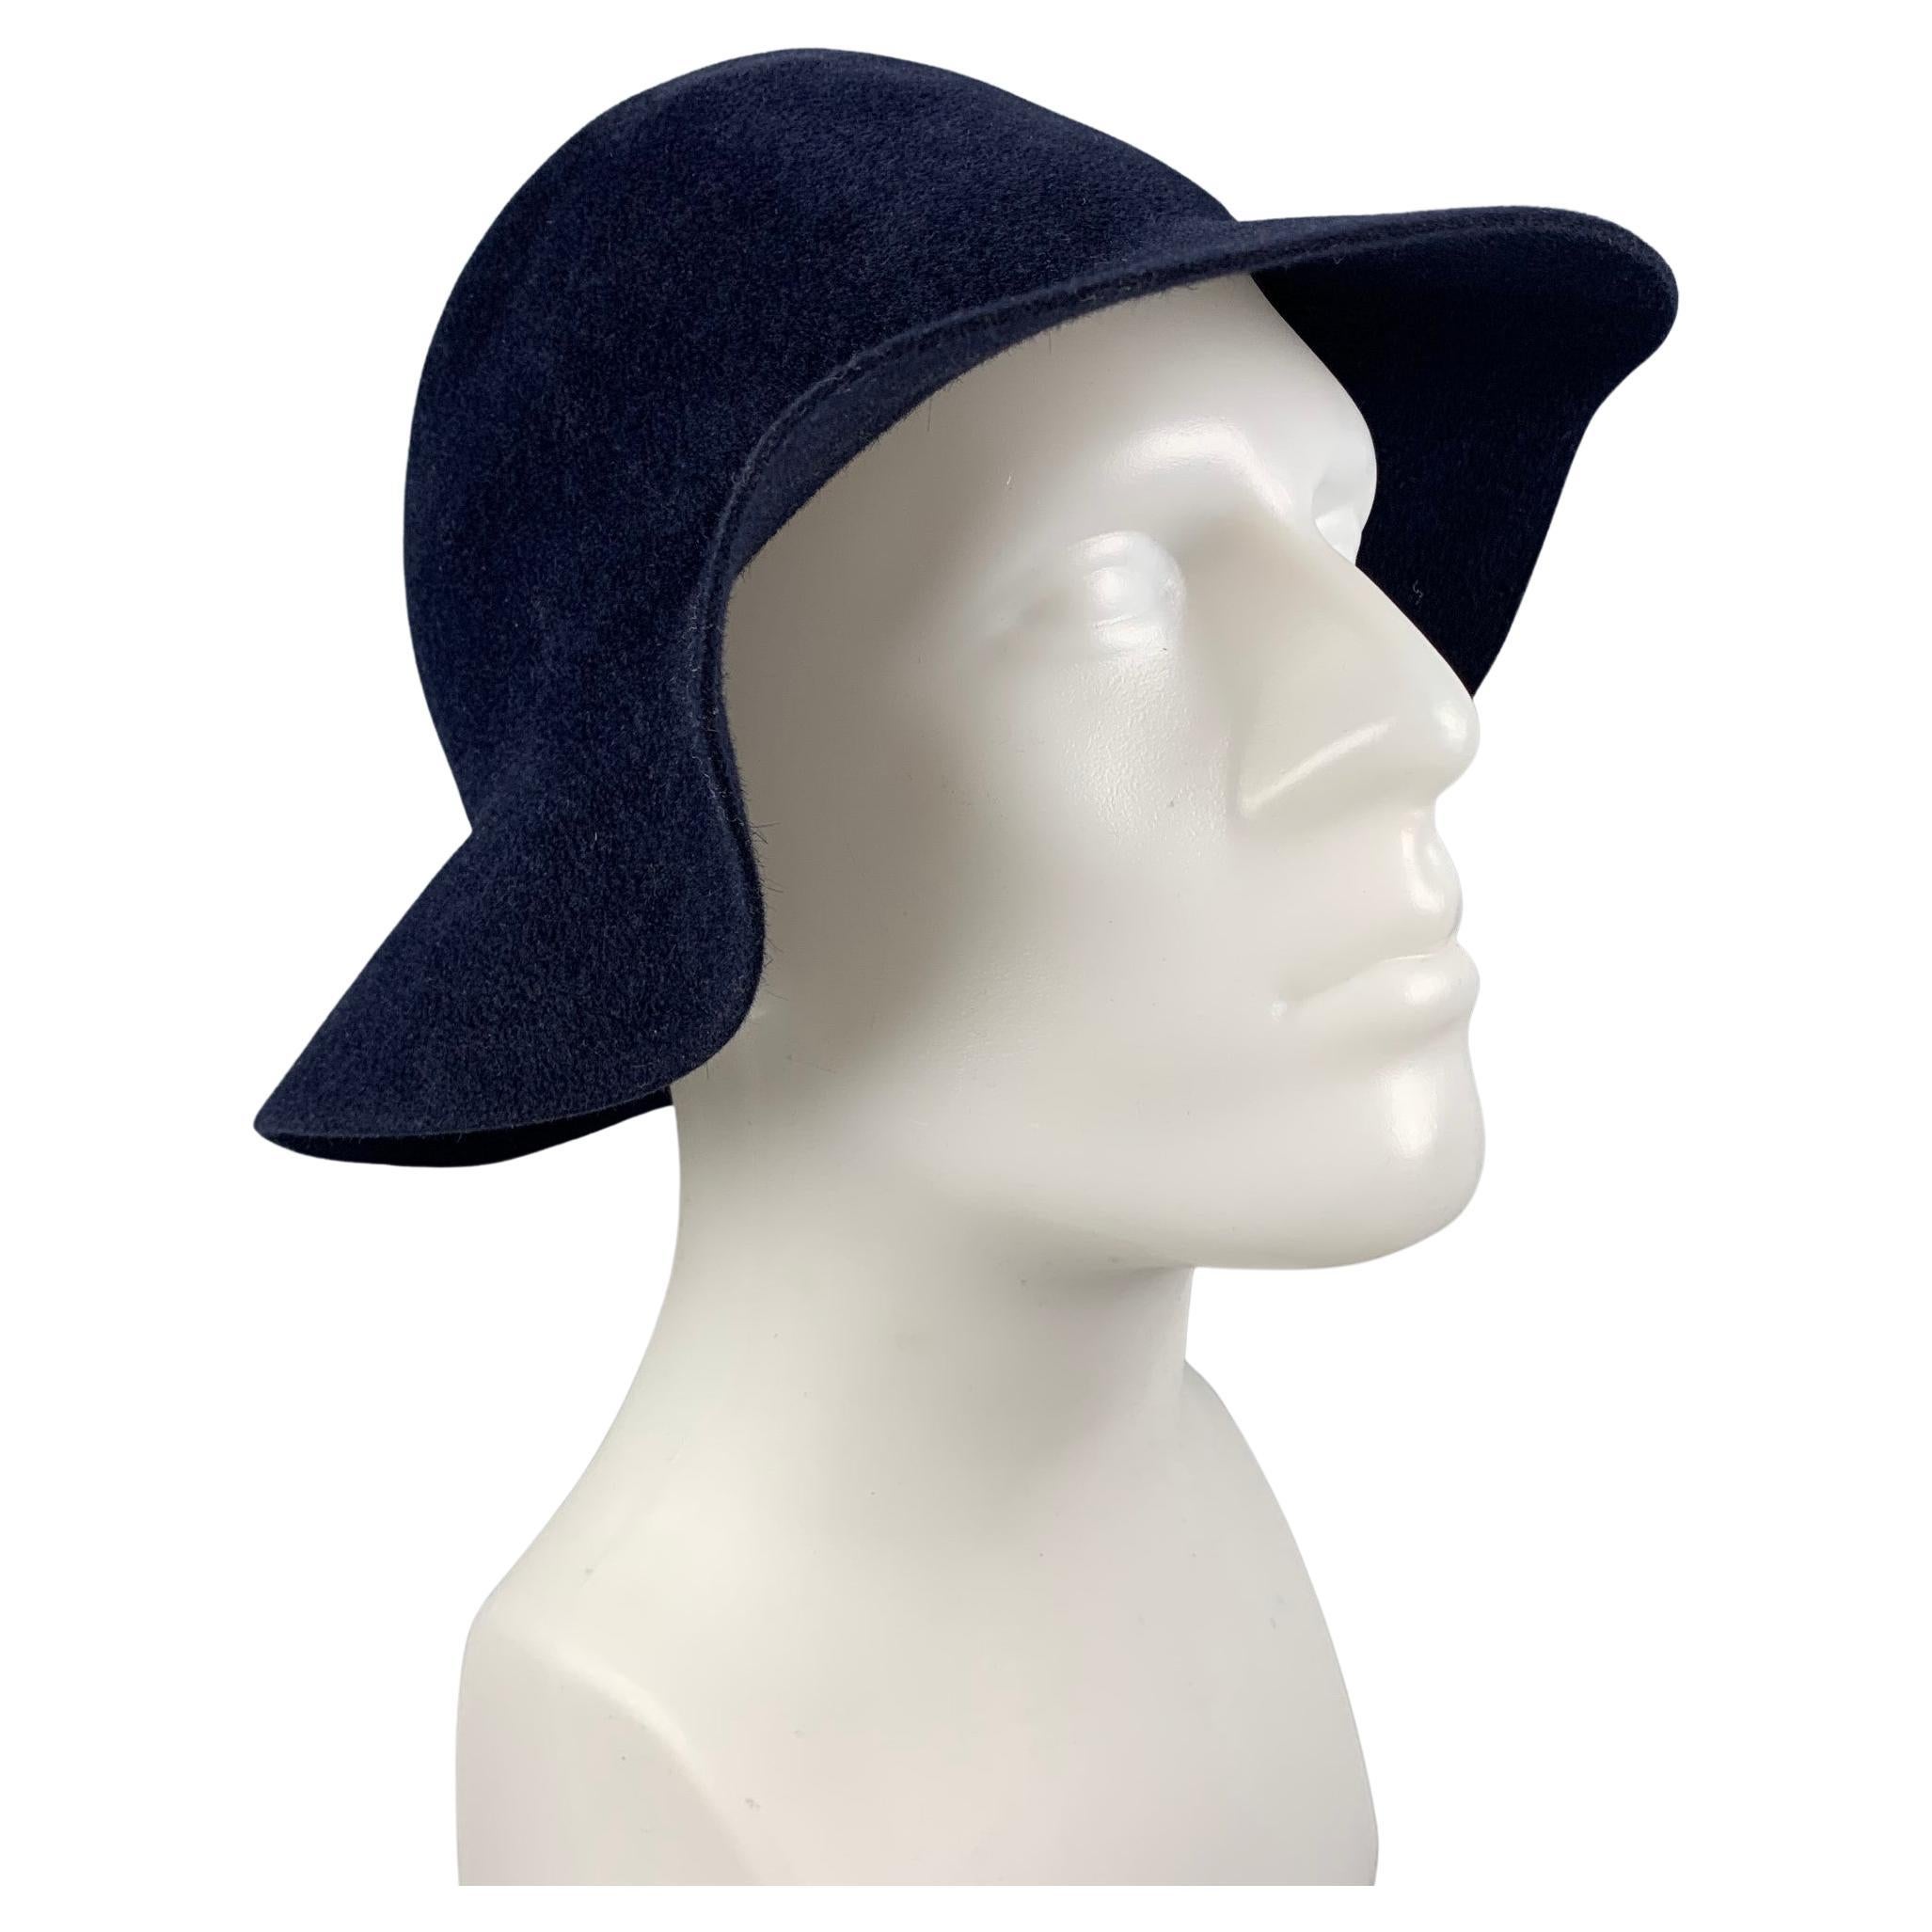 BURBERRY PRORSUM Spring 2015 Size L Navy Blue Rabbit Felt Hats